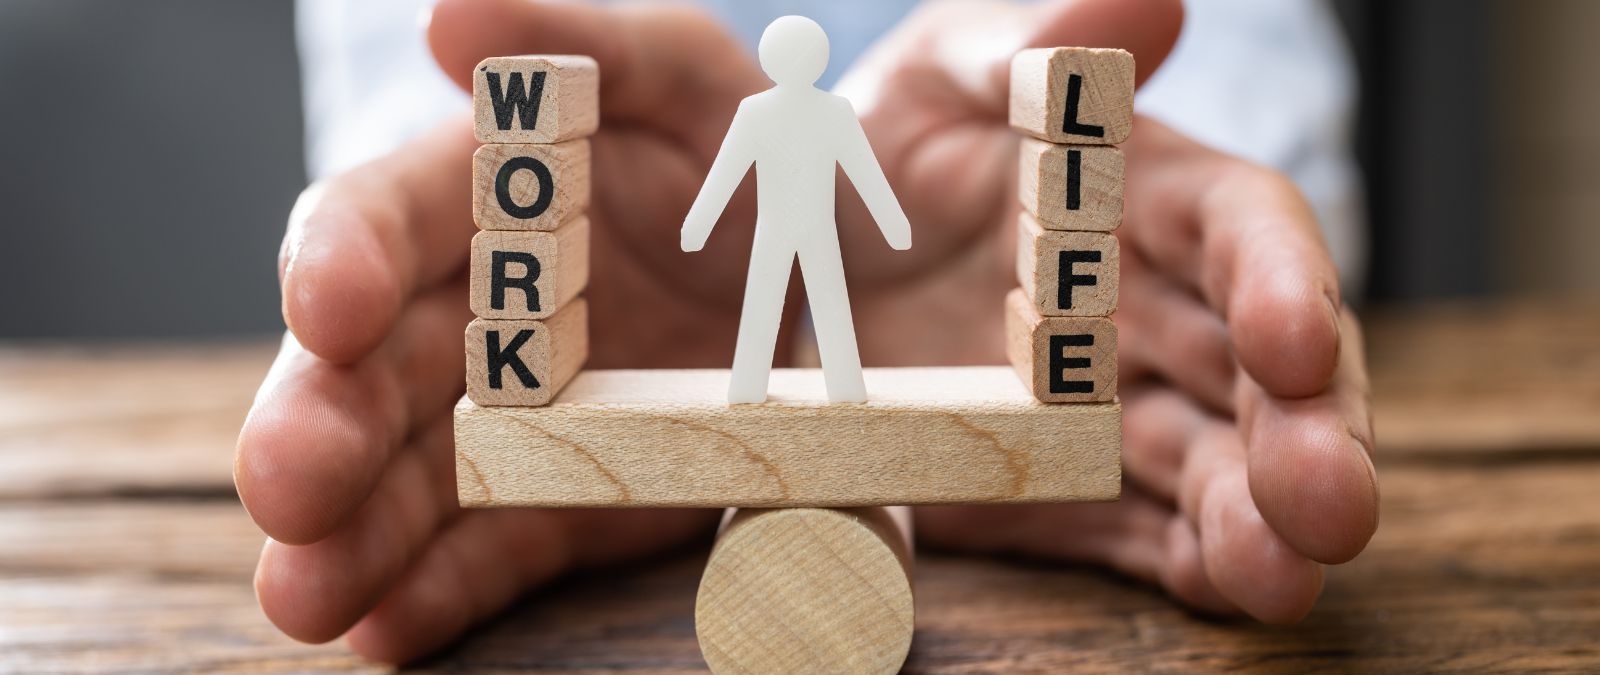 Work-Life-Balance: Ein Männchen steht in der Mitte auf einer Wippe, zwischen Work und Life.